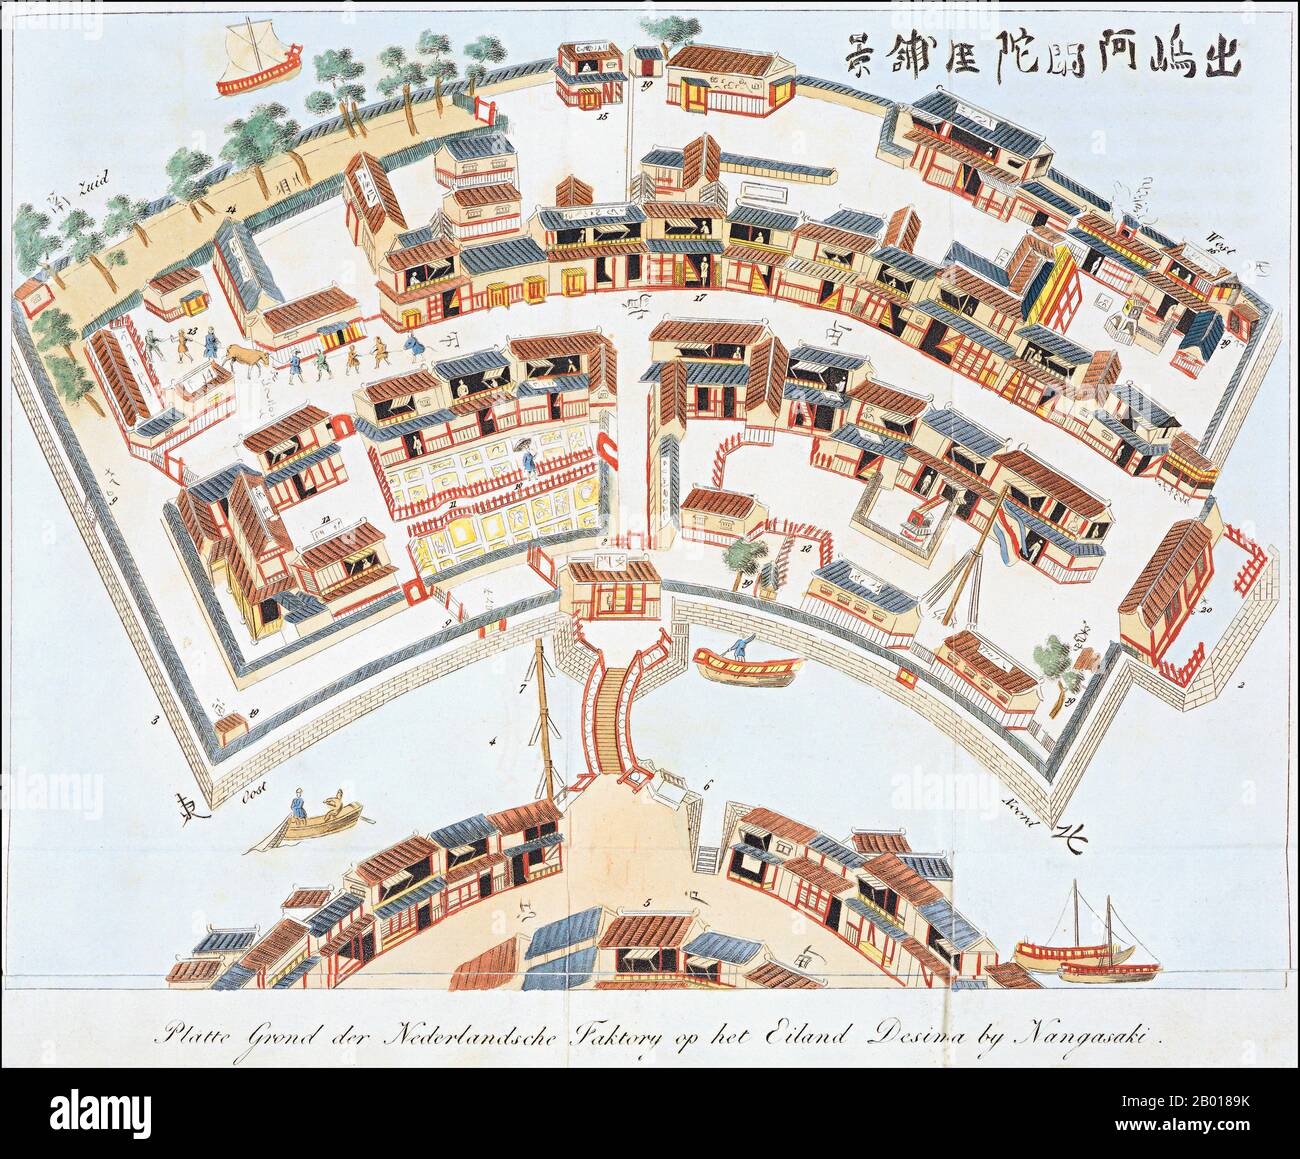 Japón: Un mapa de la fábrica holandesa en la isla de Dejima, Nagasaki, c. 1824-1825. Dejima (literalmente 'isla de salida'; holandés: Desjima o Deshima, algunas veces latinizado como Decima o Dezima) fue una pequeña isla artificial en forma de abanico construida en la bahía de Nagasaki en 1634. Esta isla, formada por la excavación de un canal a través de una pequeña península, permaneció como único lugar de comercio directo e intercambio entre Japón y el mundo exterior durante el período Edo. Dejima fue construido para restringir a los comerciantes extranjeros como parte de la política aislacionista autoimpuesta de 'sakoku'. Foto de stock